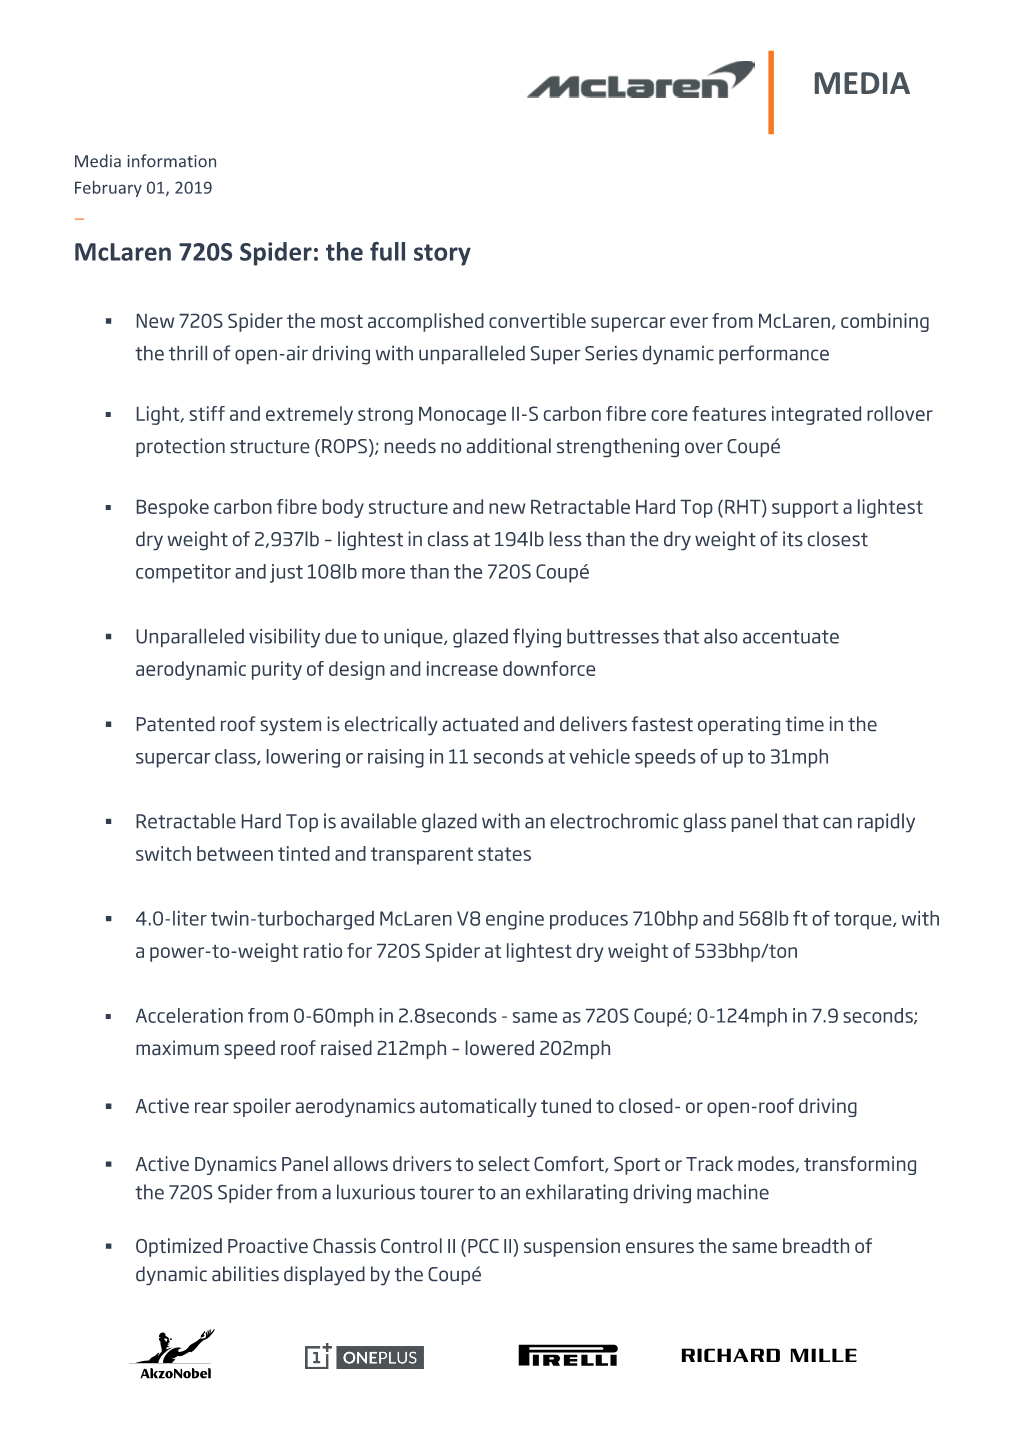 Mclaren 720S Spider: the Full Story